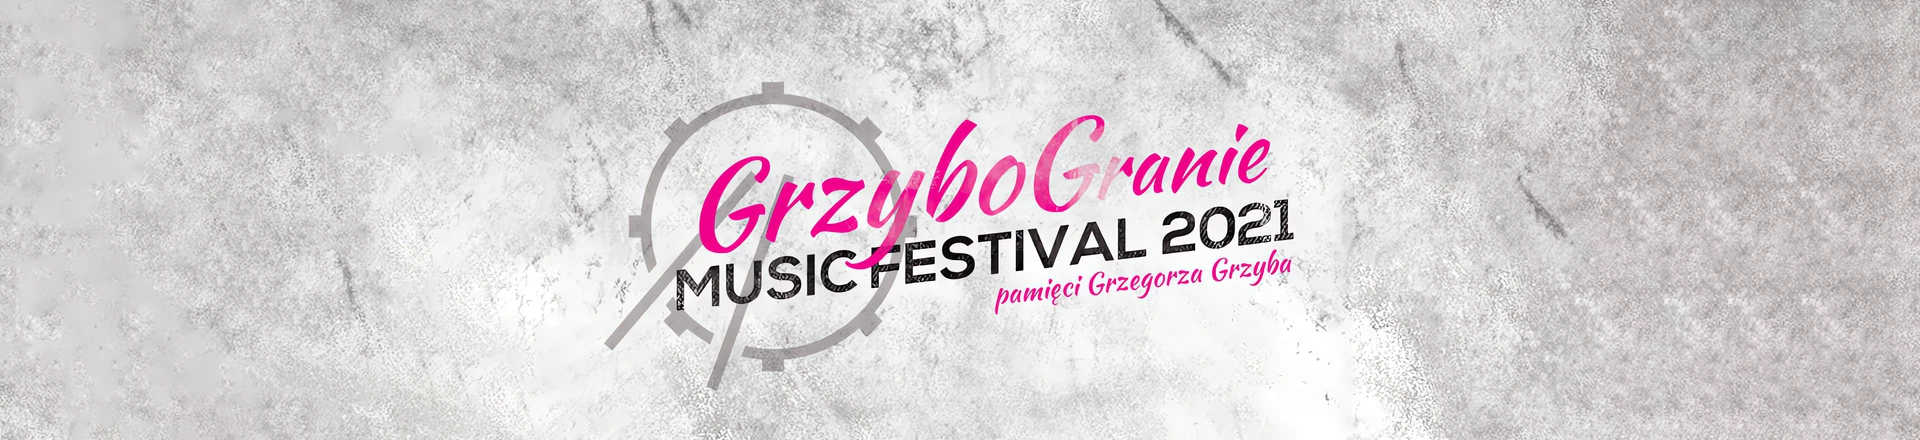 Grzybogranie Music Festival. DO zobaczenia 19-23 października